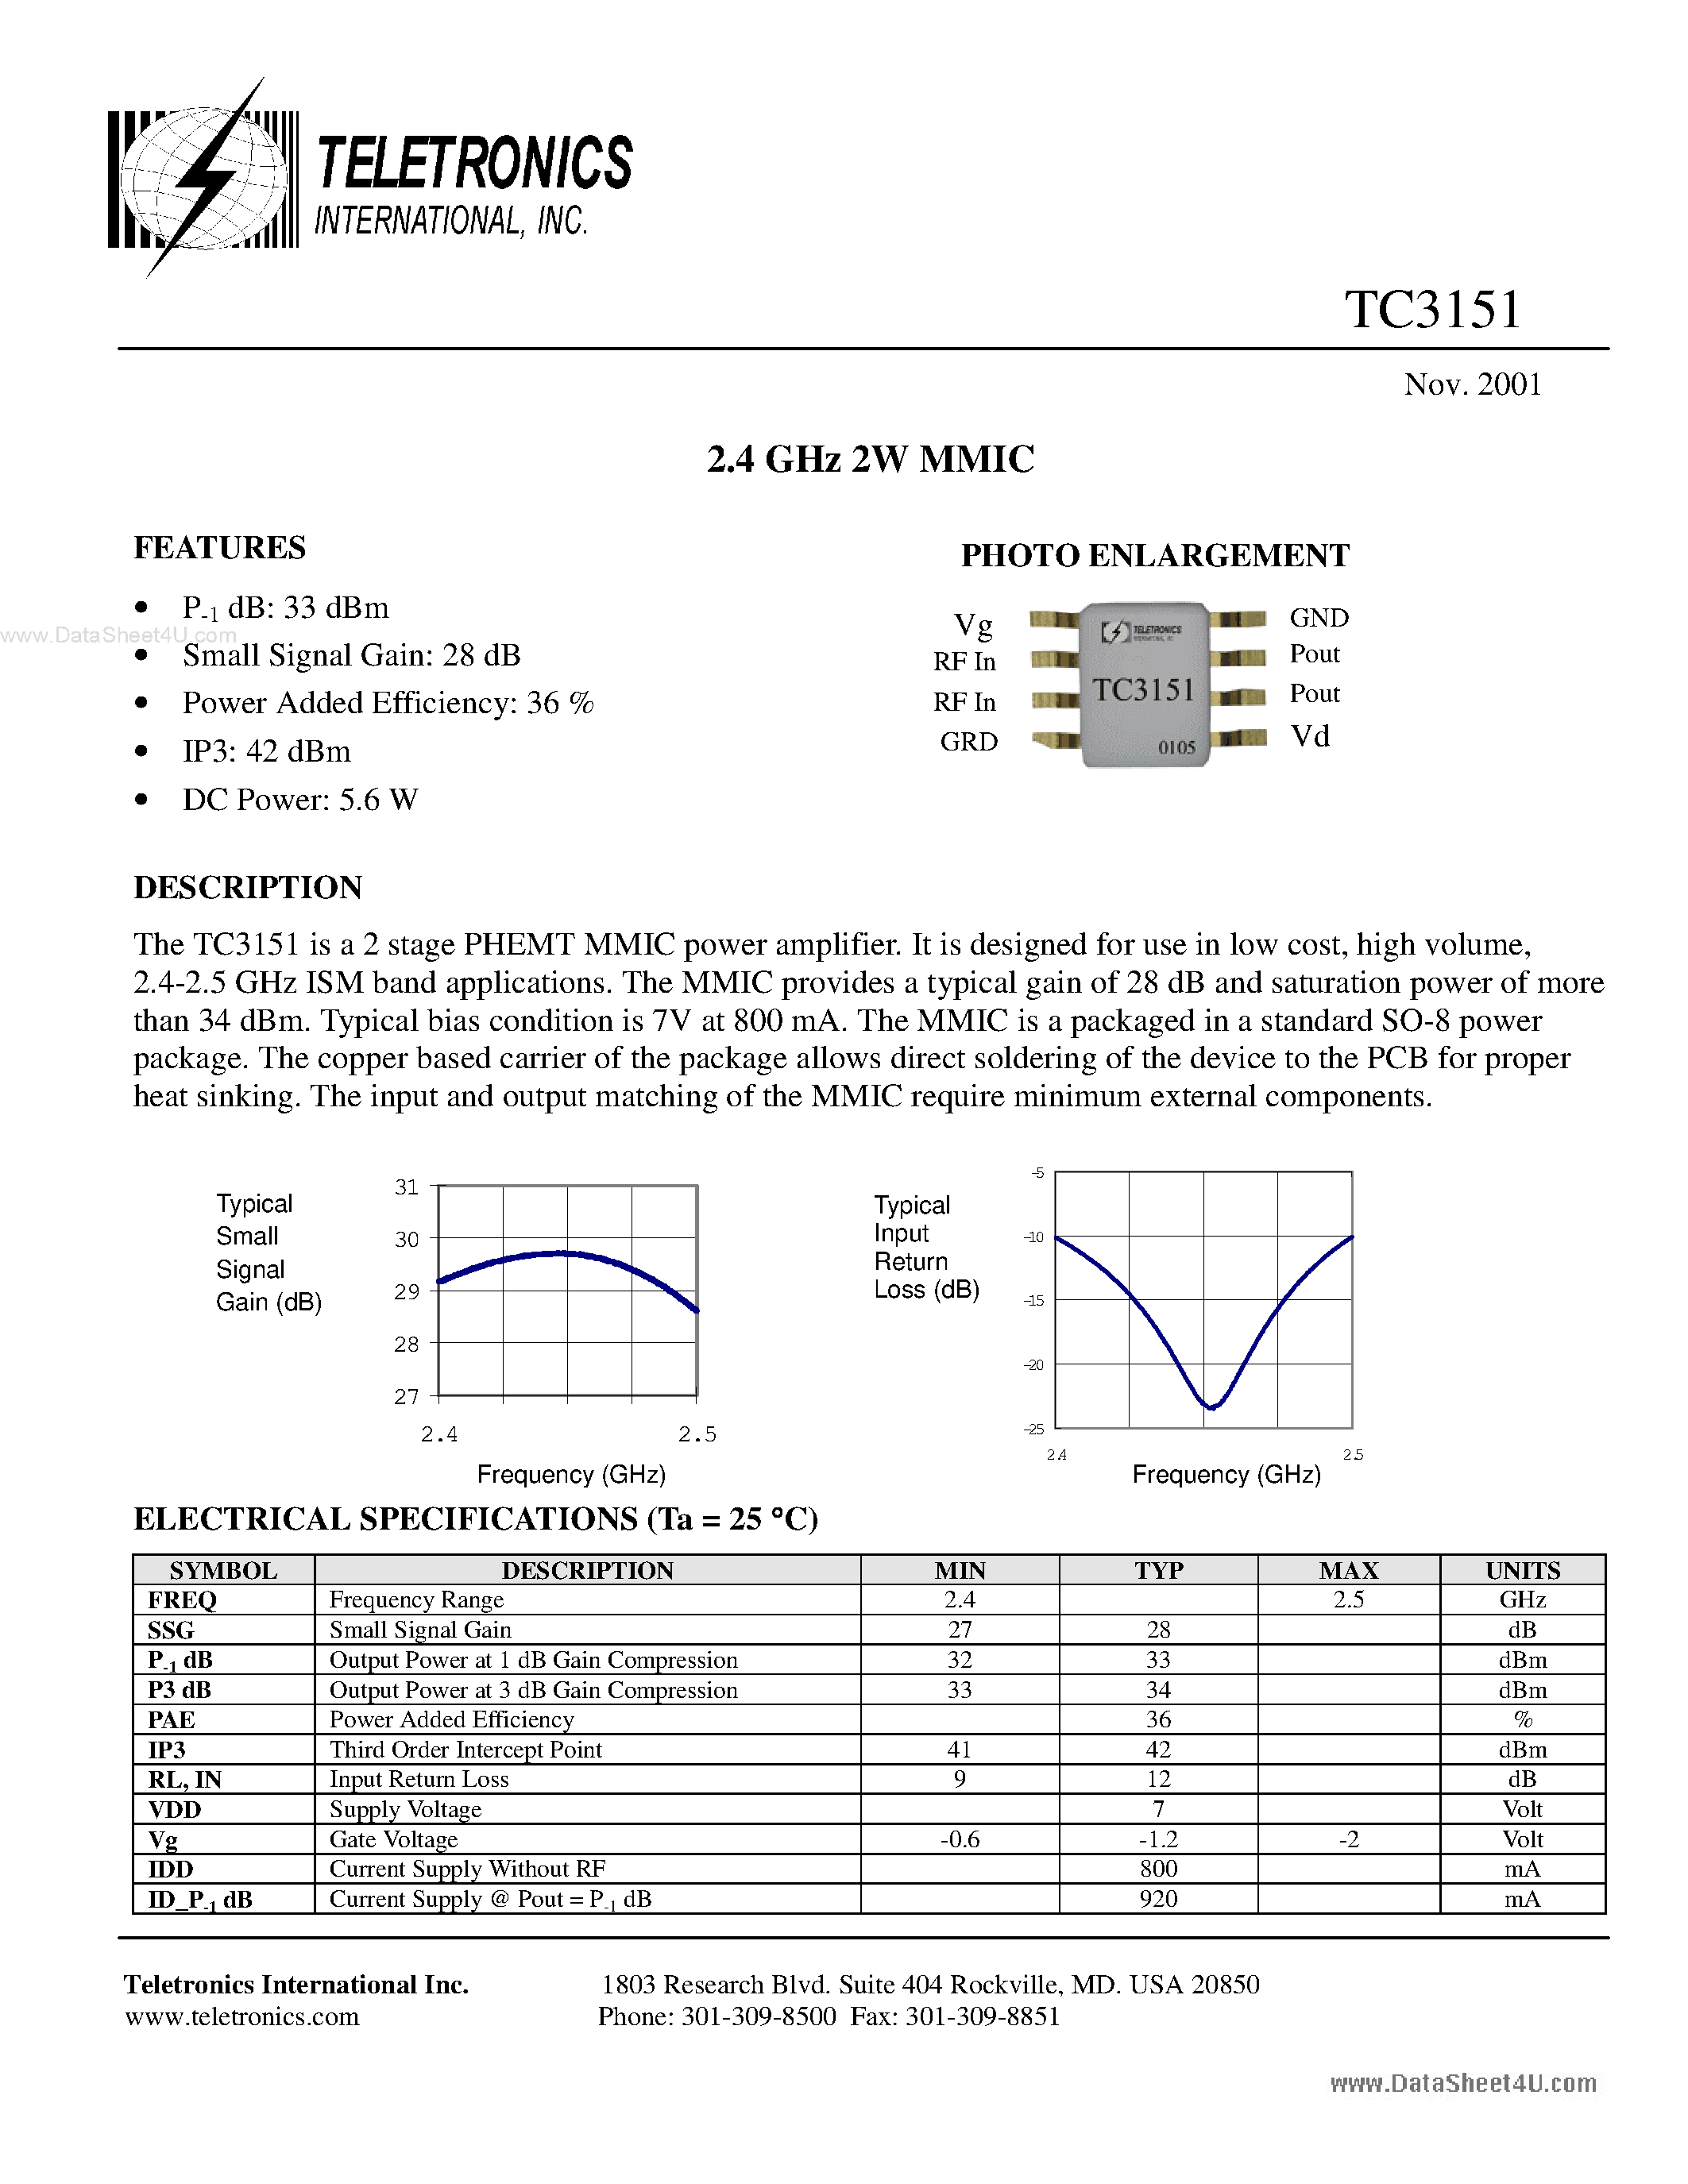 Даташит TC3151 - 2.4 GHz 2W MMIC страница 1